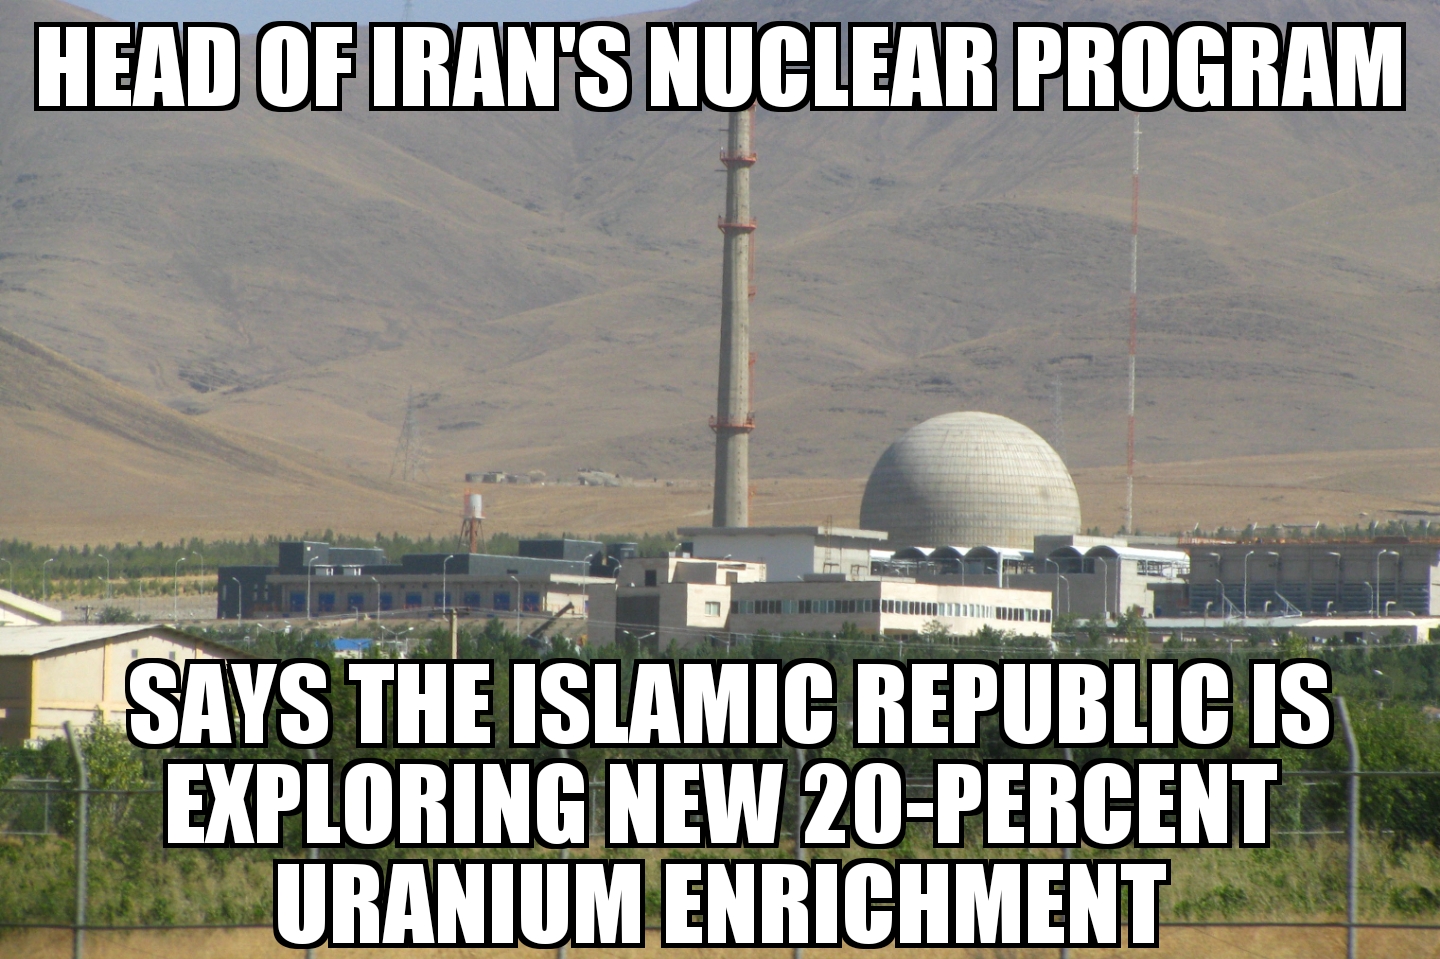 Iran ‘exploring new uranium enrichment’